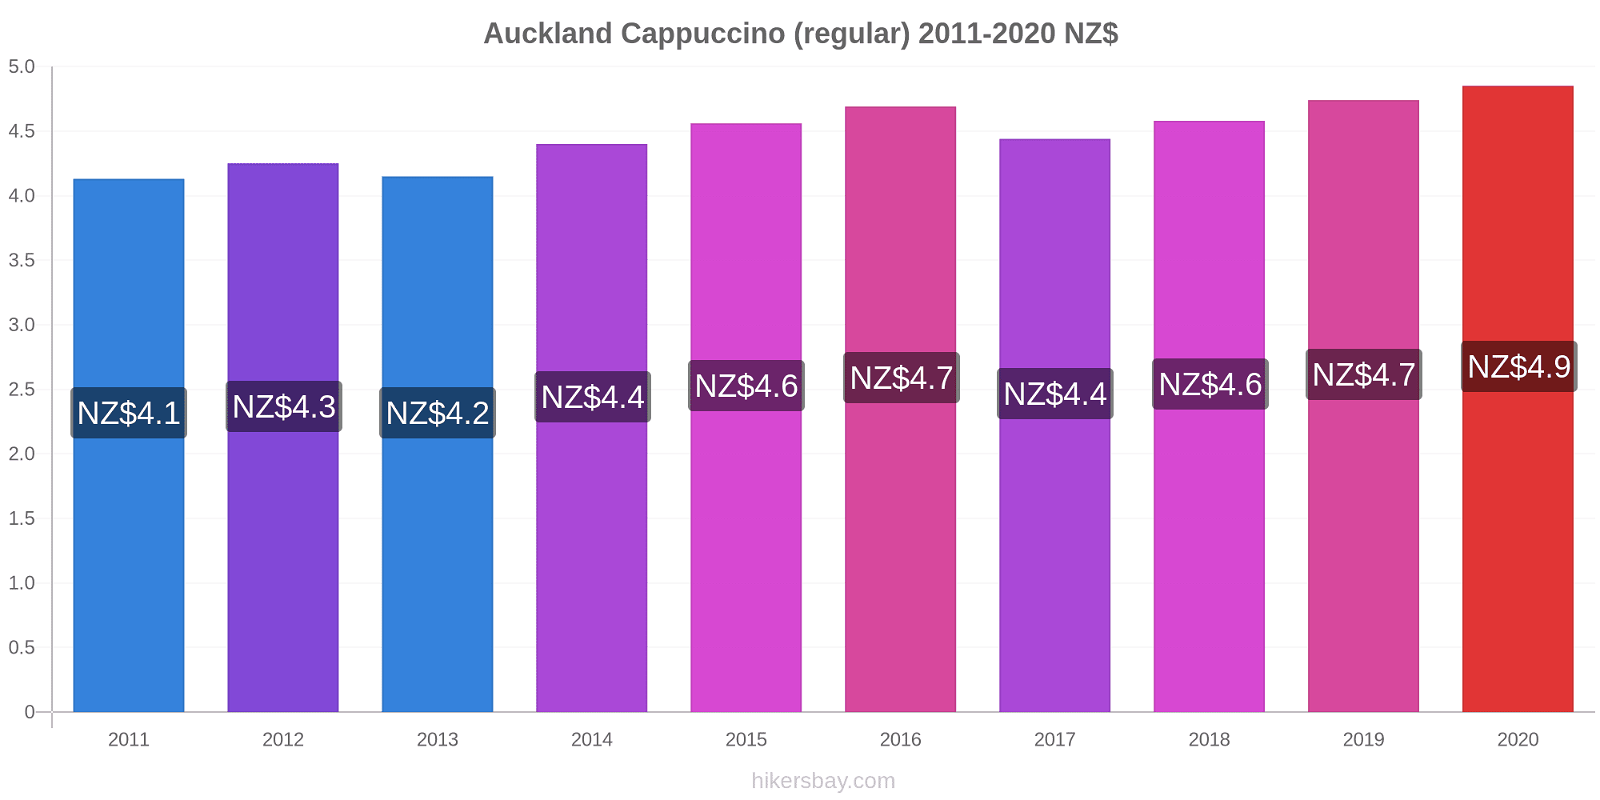 Auckland price changes Cappuccino (regular) hikersbay.com